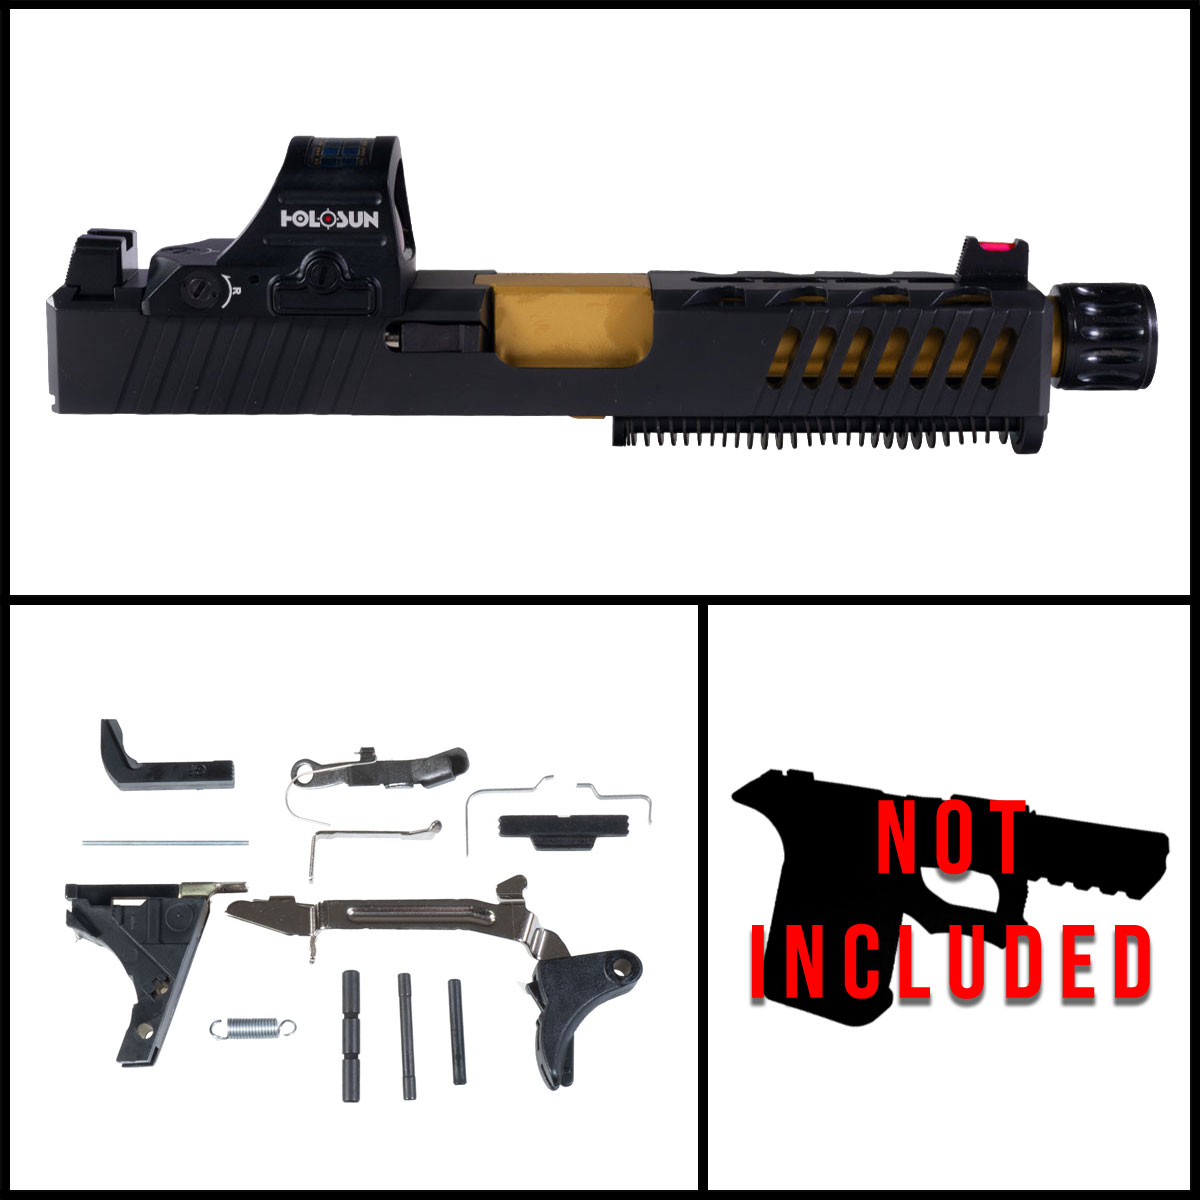 DD 'Festina Lente w/ HS507C-X2 Red Dot' 9mm Full Pistol Build Kit (Everything Minus Frame) - Glock 19 Gen 1-3 Compatible